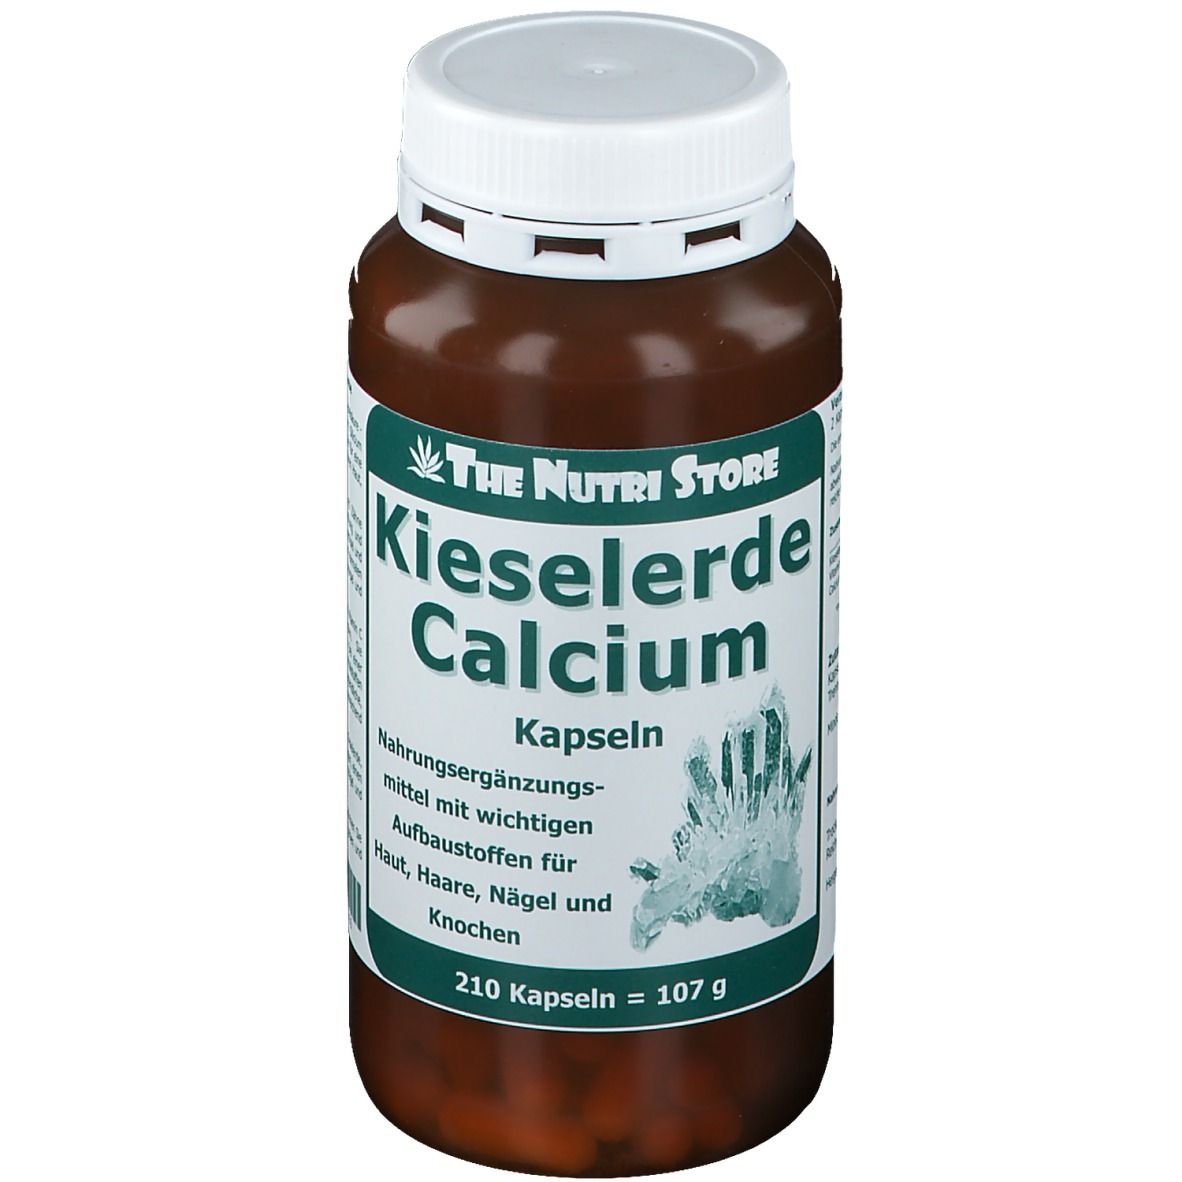 Image of Kieselerde Calcium Kapseln